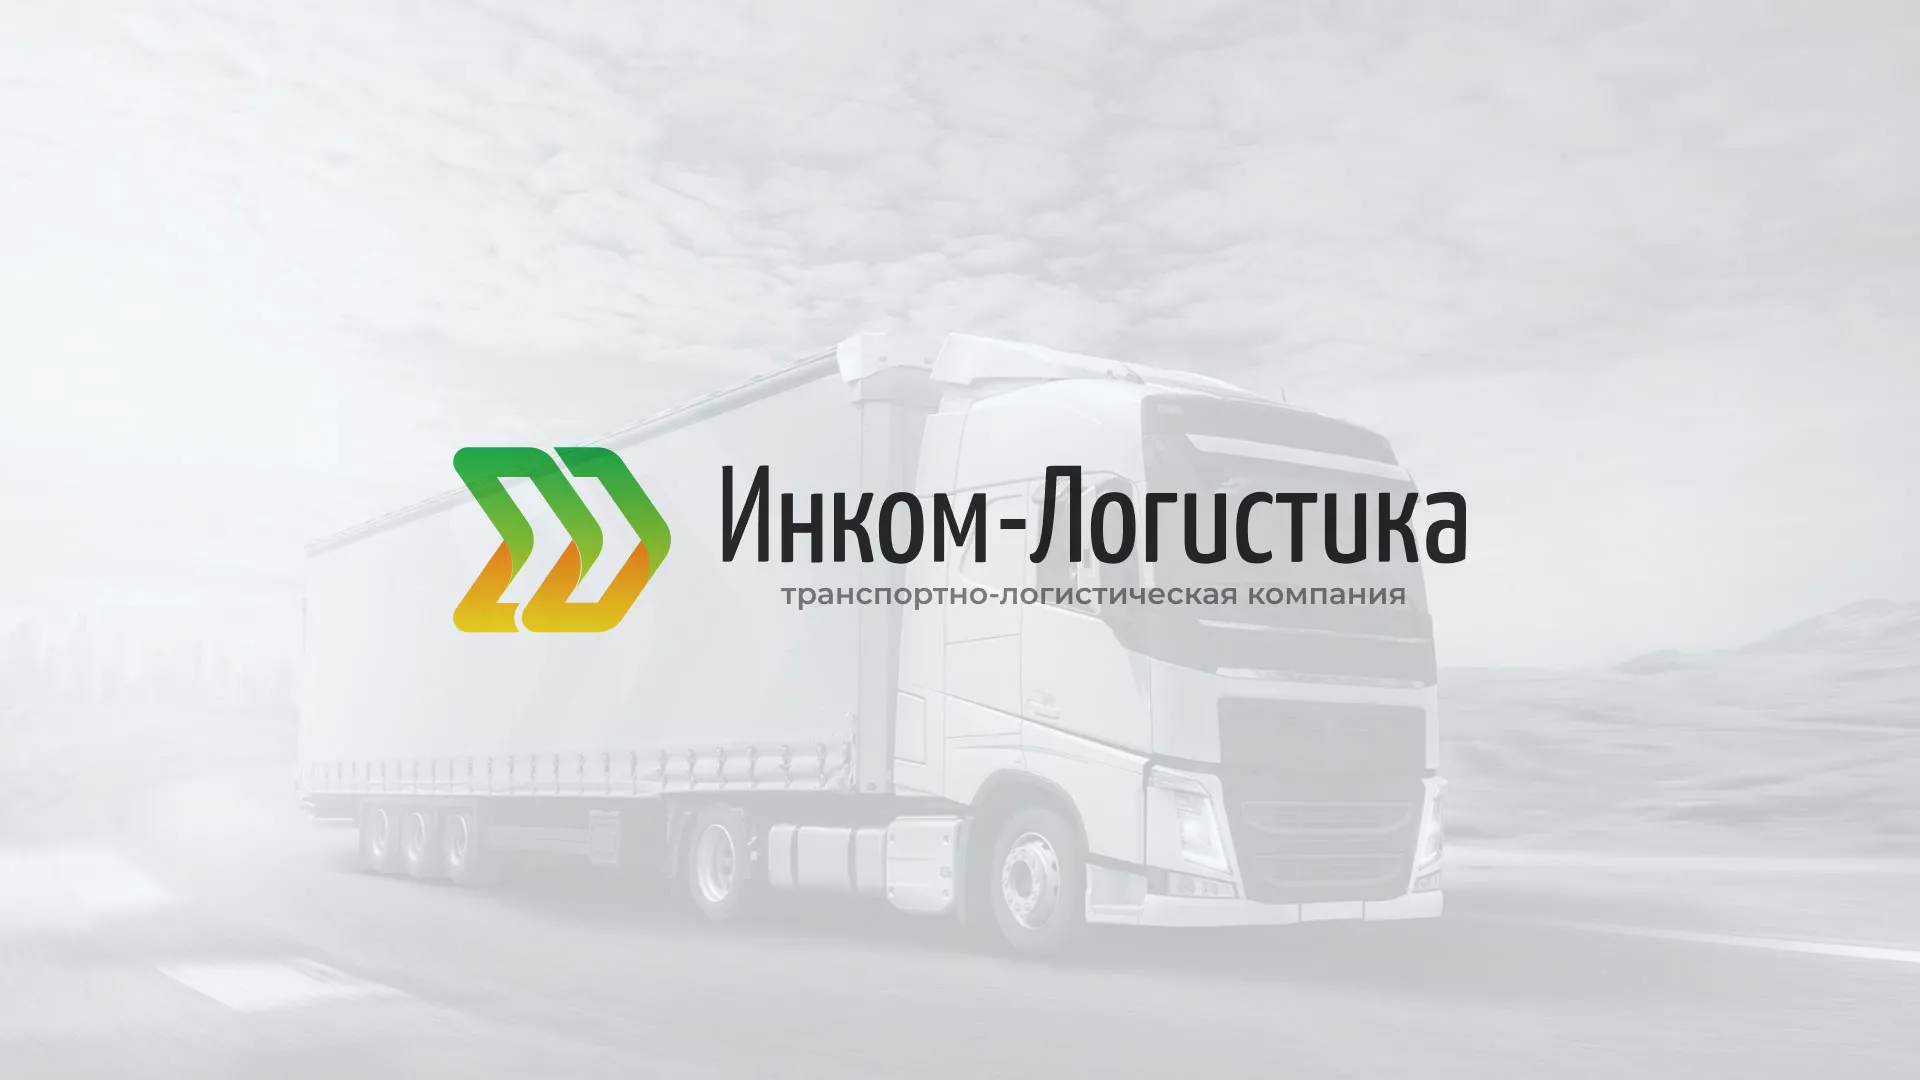 Разработка логотипа и сайта компании «Инком-Логистика» в Волжском